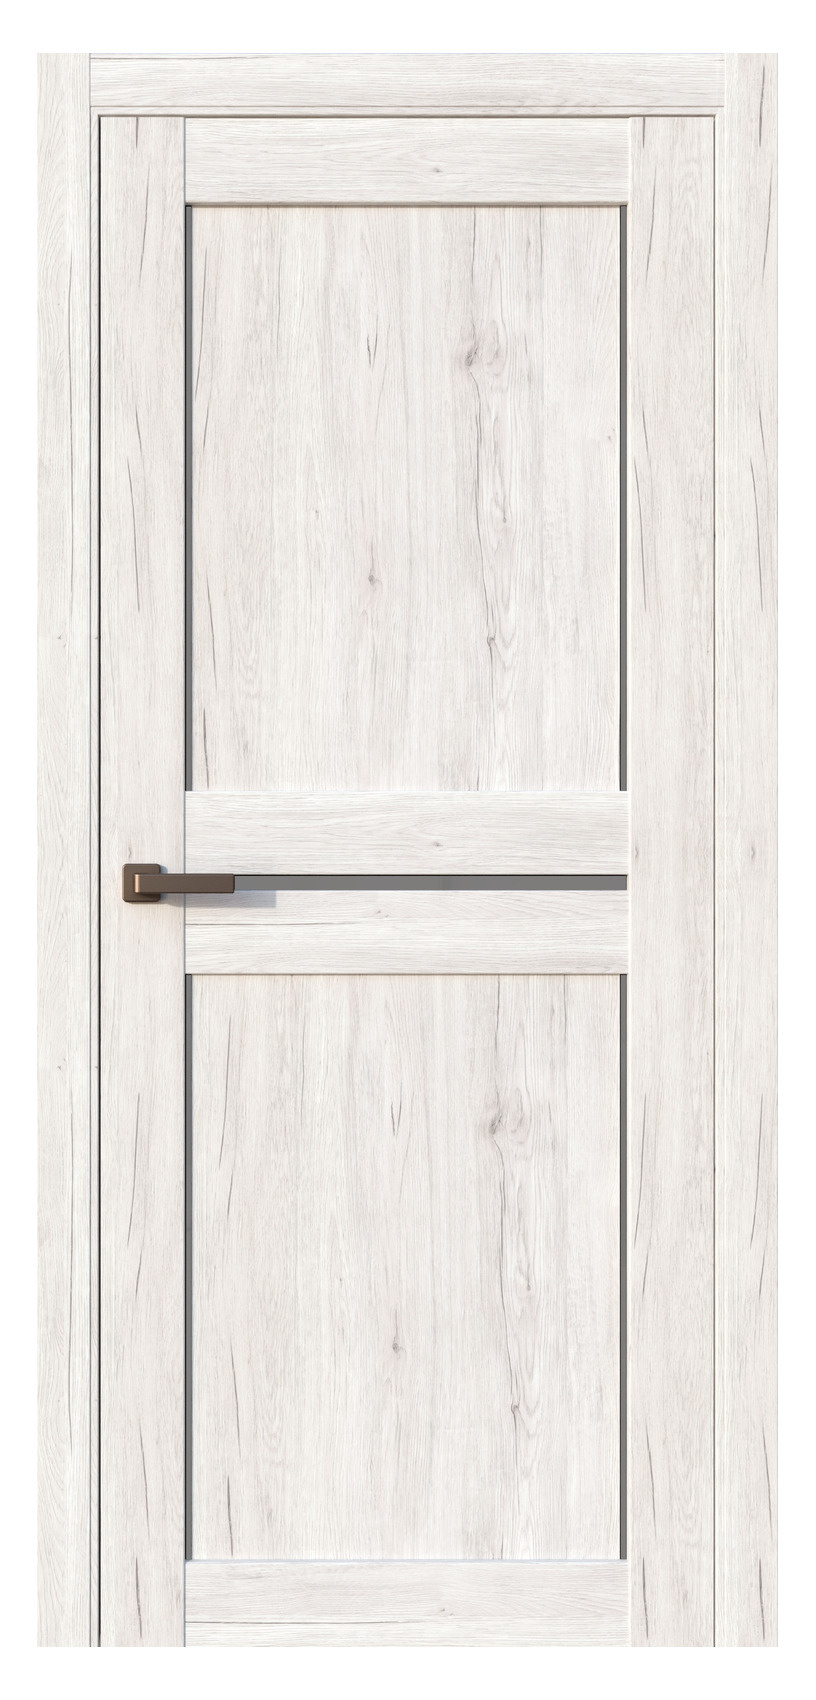 Questdoors Межкомнатная дверь QC2, арт. 17504 - фото №1